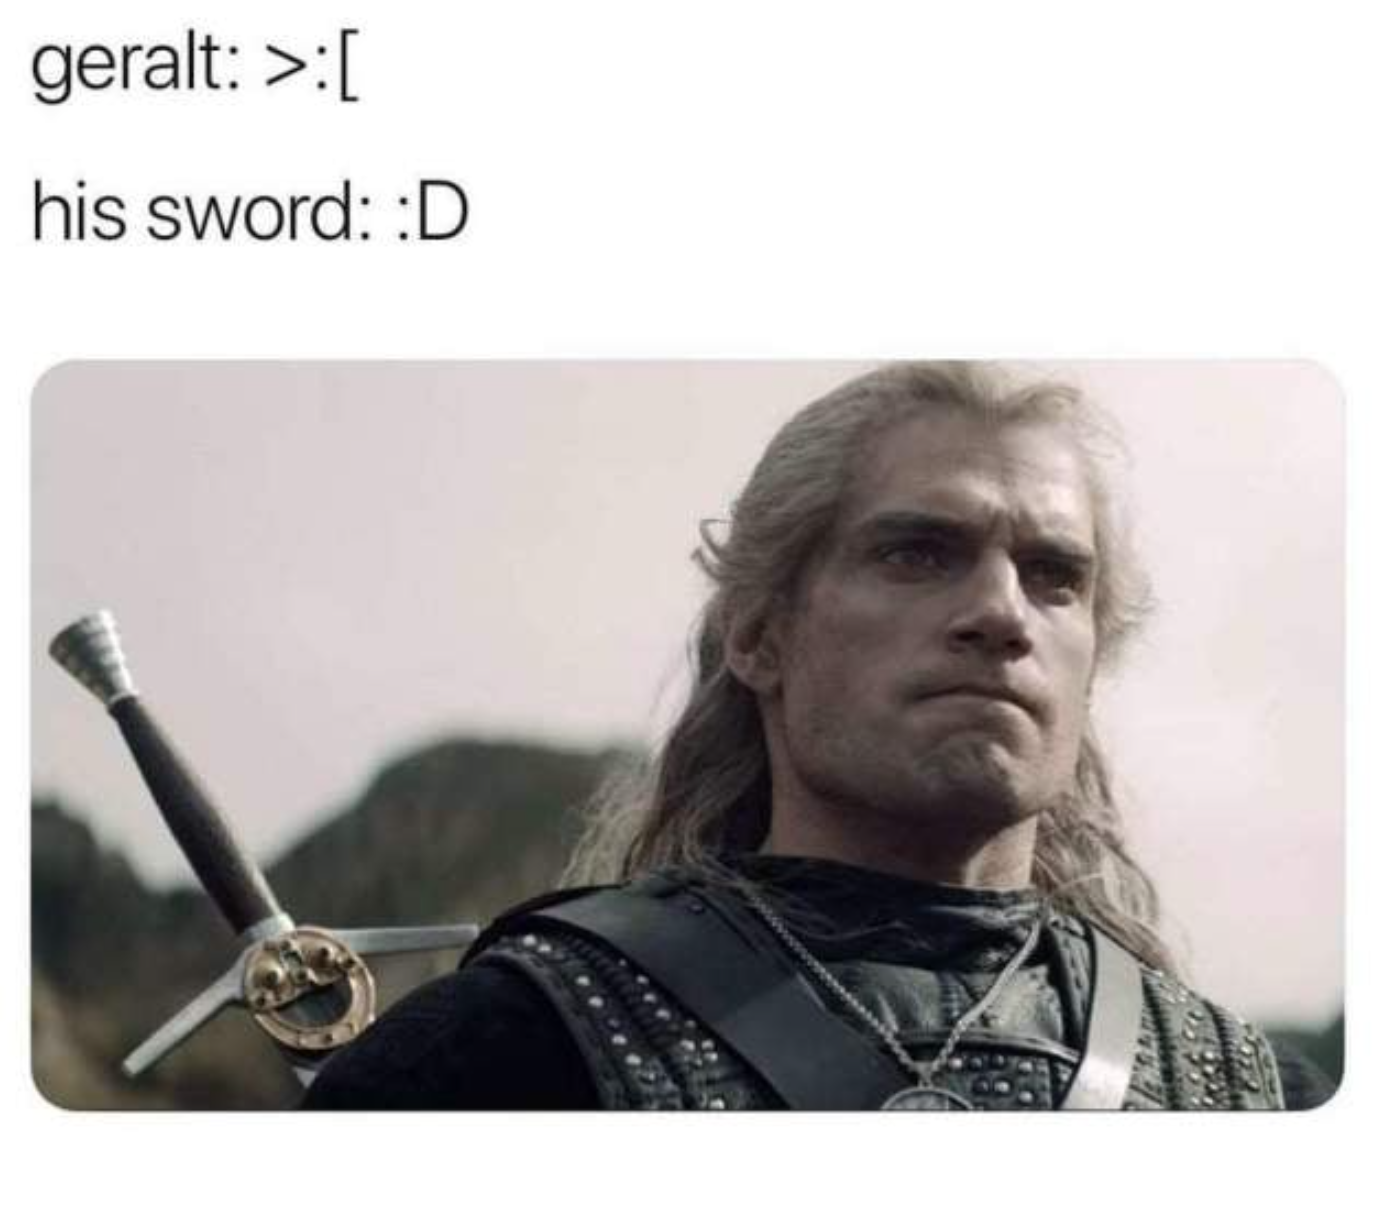 funny gaming memes --  witcher geralt sword meme - geralt > his sword D